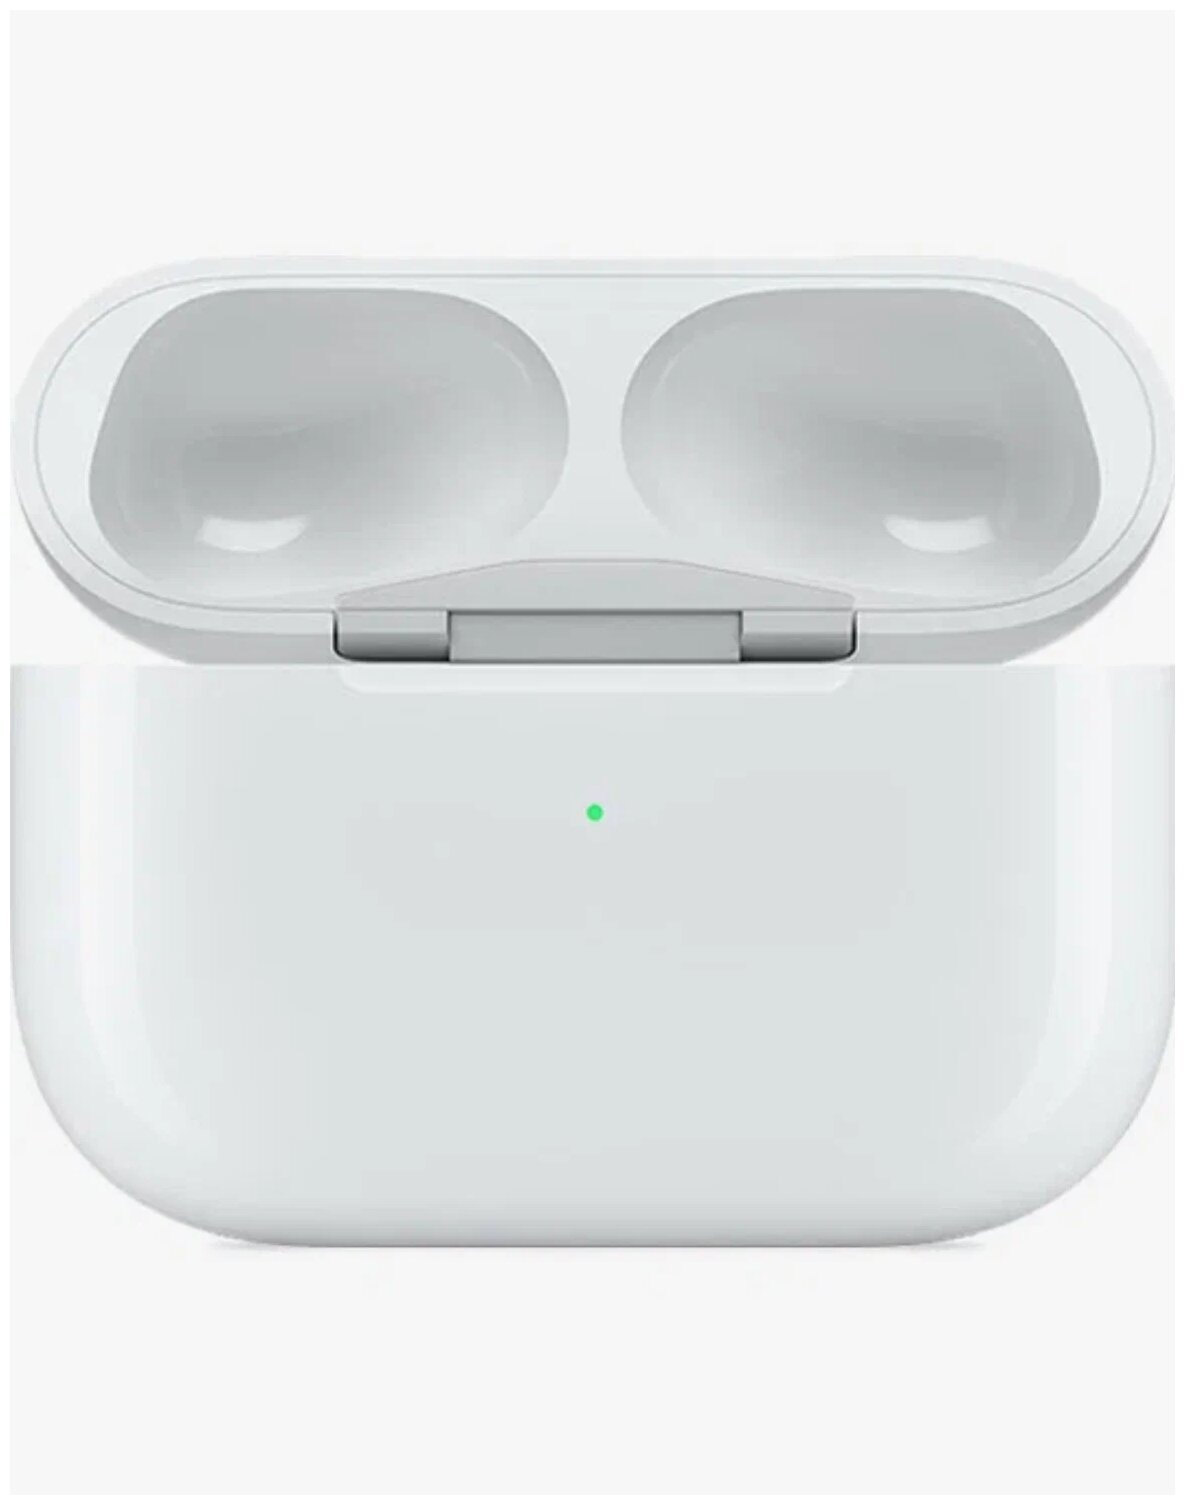 Кейс Apple Airpods Pro 2 белый — купить в интернет-магазине по низкой цене на Яндекс Маркете